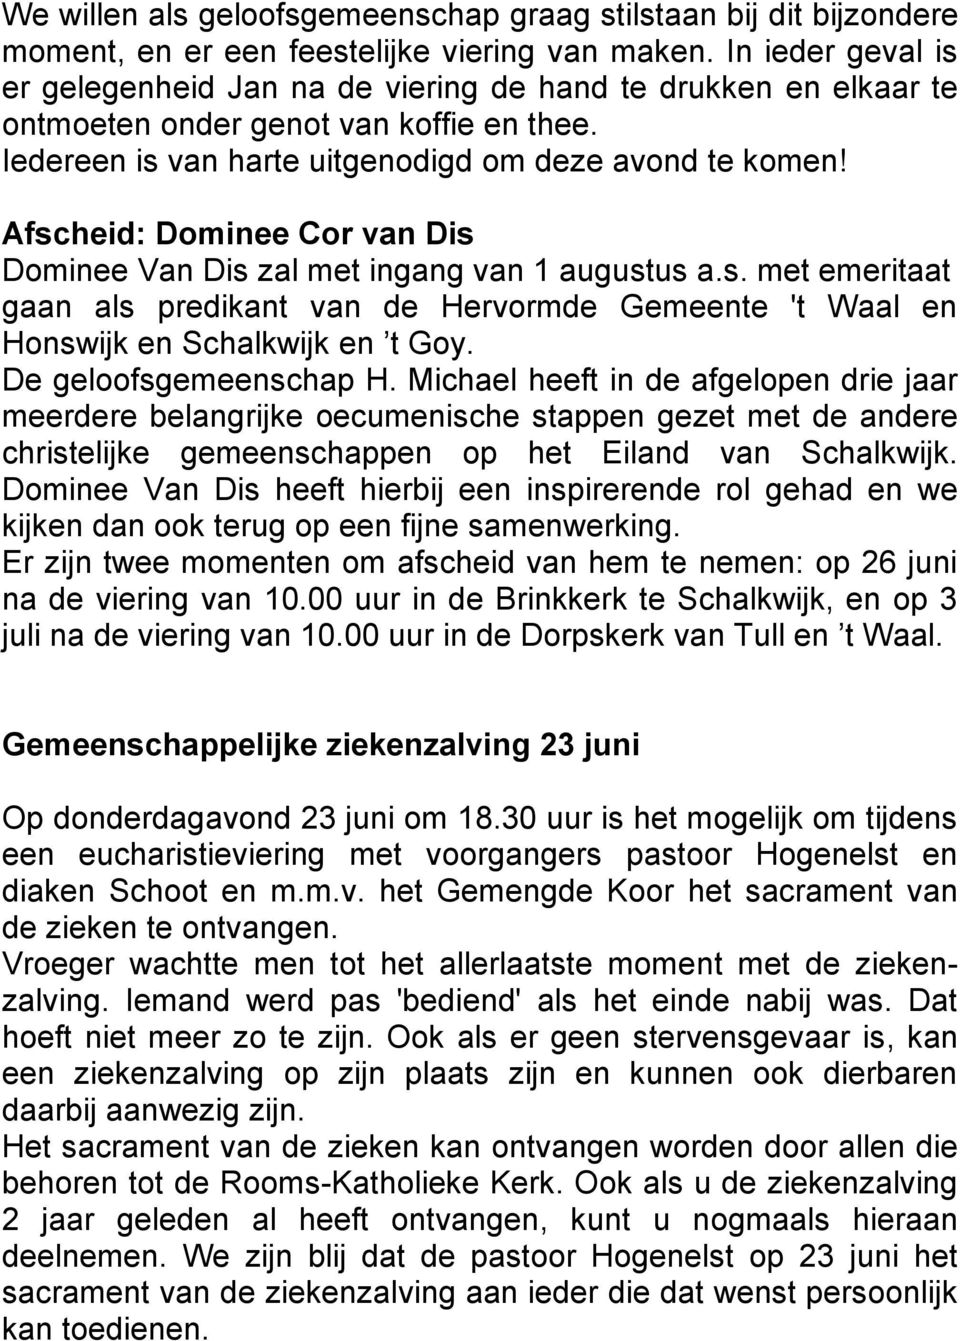 Afscheid: Dominee Cor van Dis Dominee Van Dis zal met ingang van 1 augustus a.s. met emeritaat gaan als predikant van de Hervormde Gemeente 't Waal en Honswijk en Schalkwijk en t Goy.